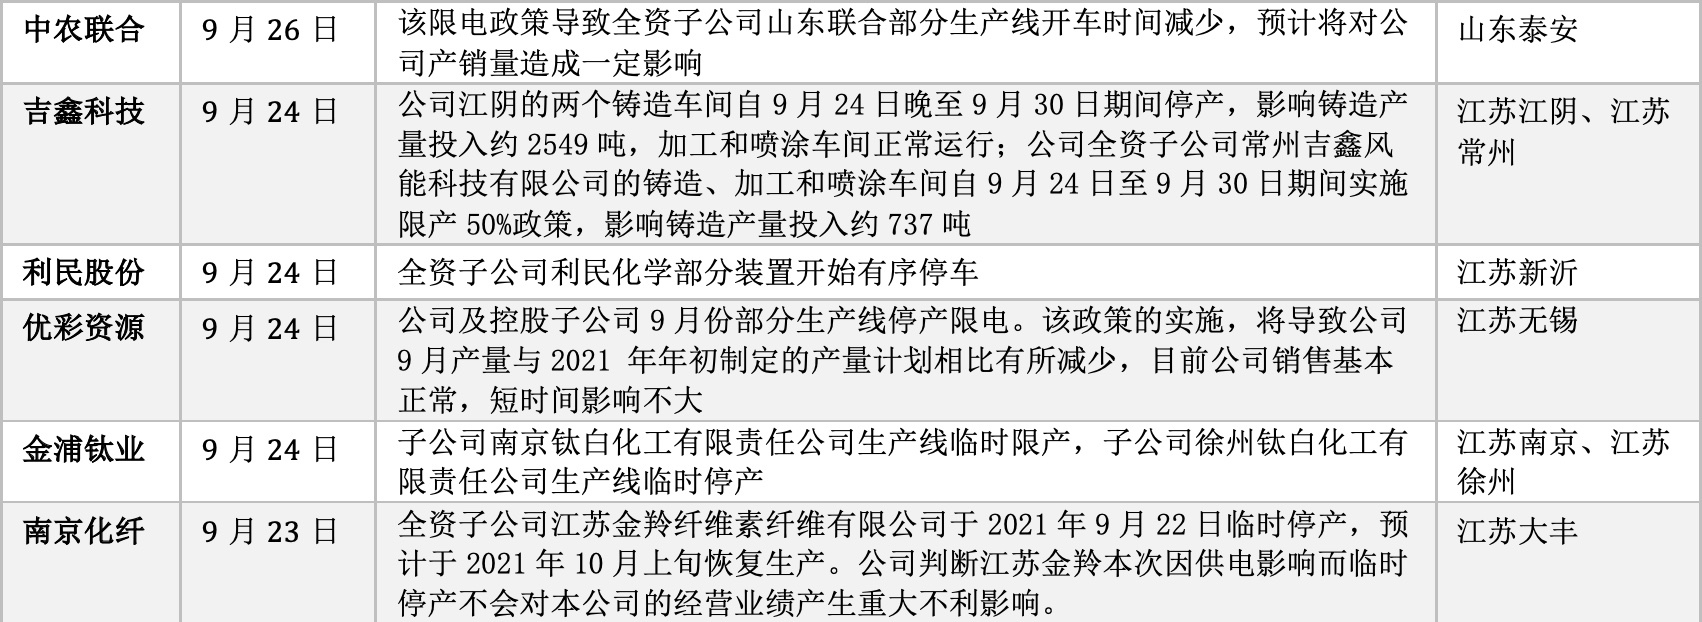 “A股“拉闸停电”32家公司限产 江苏省发改委回应：只是短期影响